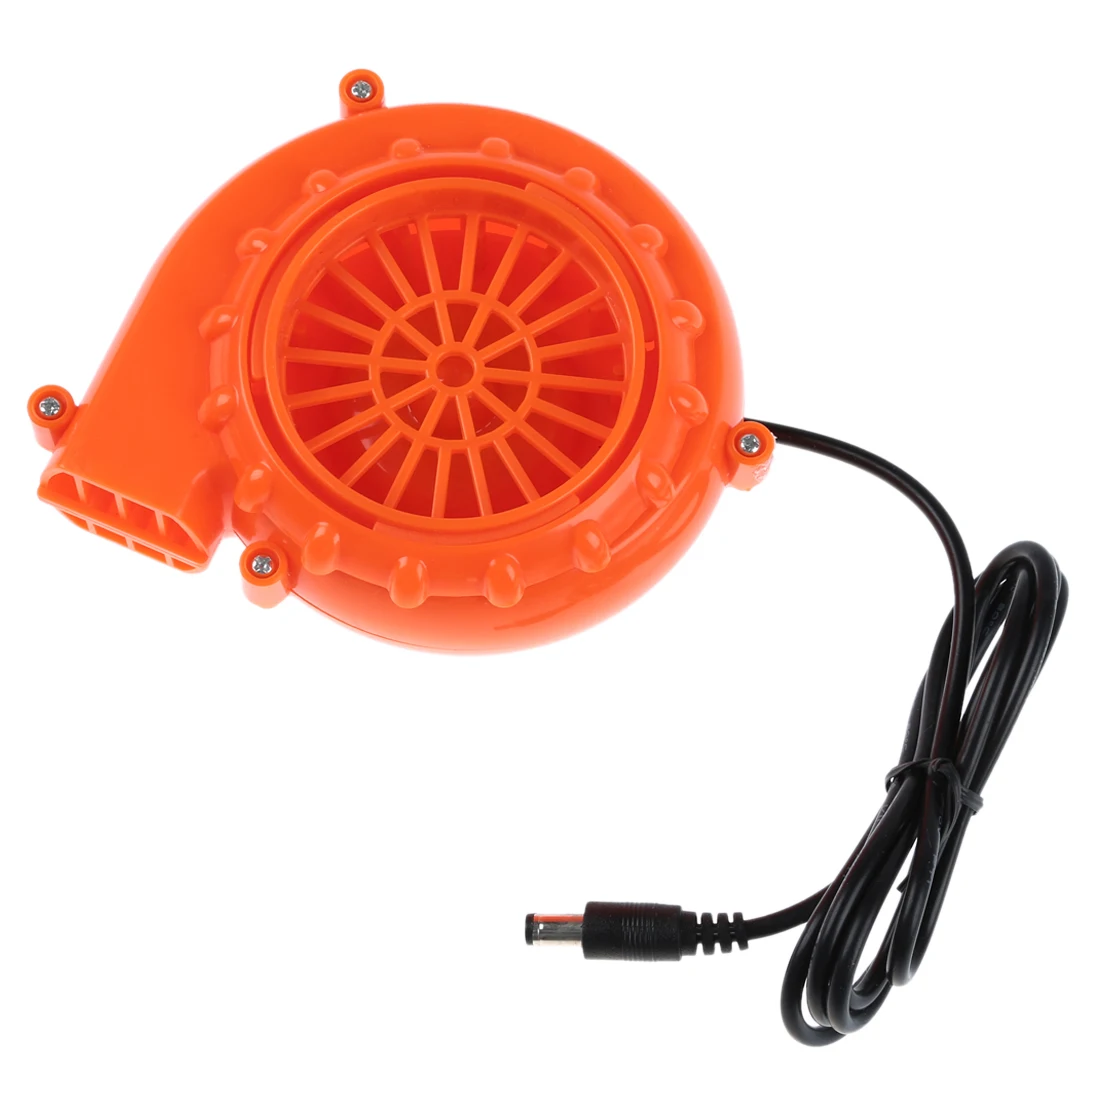 Миниатюрный вентилятор для головы талисмана надувной костюм 6 в питание 4xAA сухая батарея оранжевый он используется для режима газа, надувной